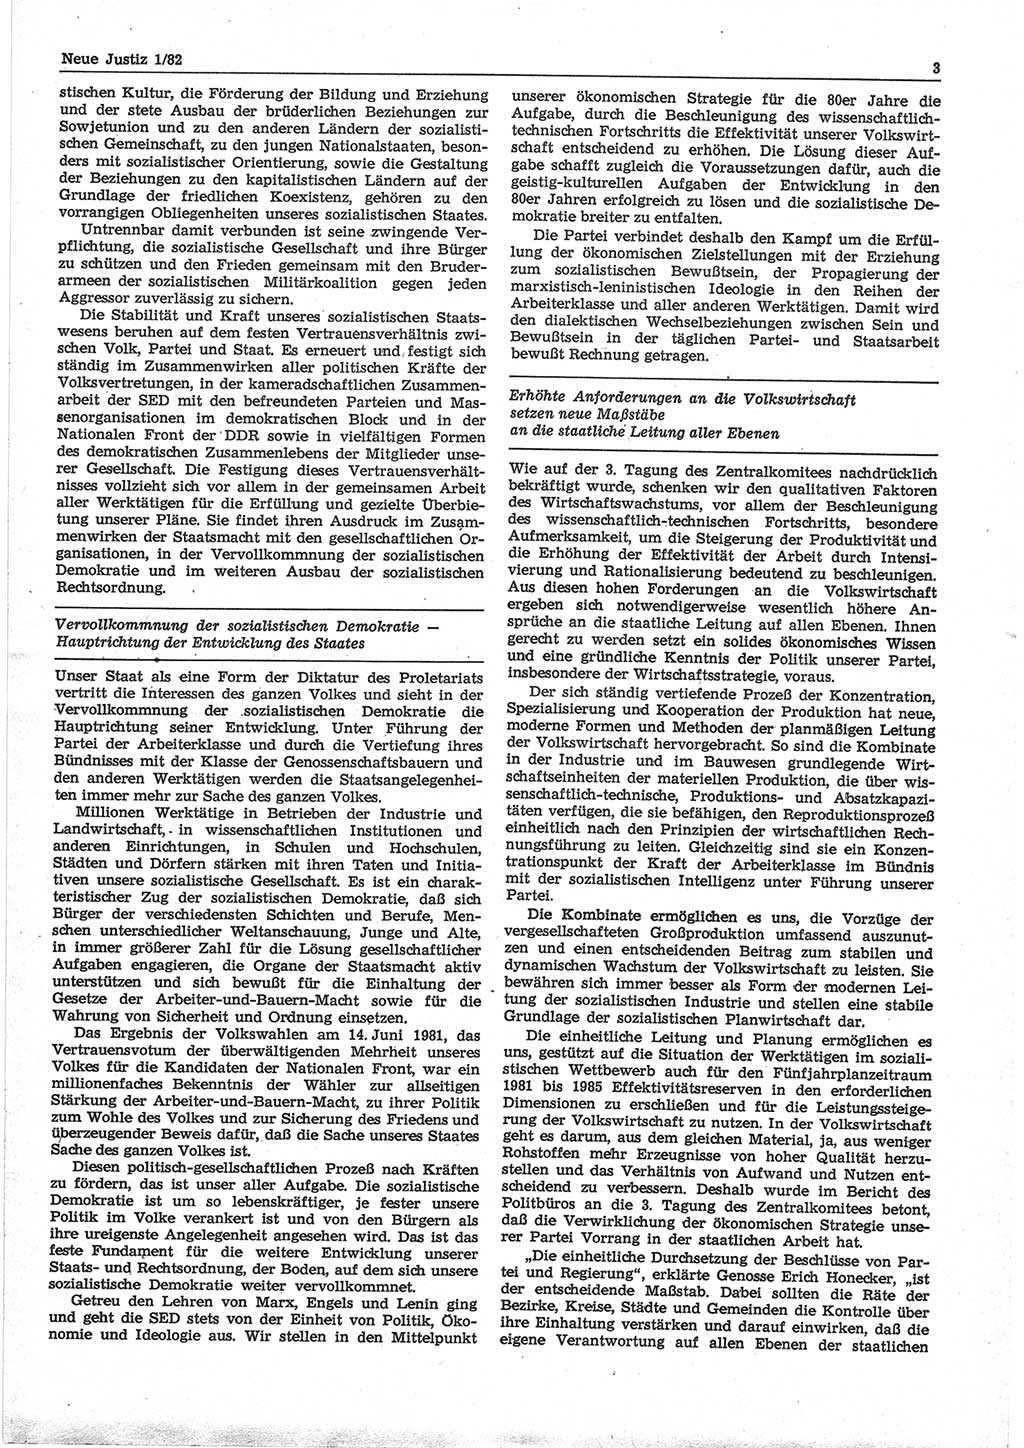 Neue Justiz (NJ), Zeitschrift für sozialistisches Recht und Gesetzlichkeit [Deutsche Demokratische Republik (DDR)], 36. Jahrgang 1982, Seite 3 (NJ DDR 1982, S. 3)